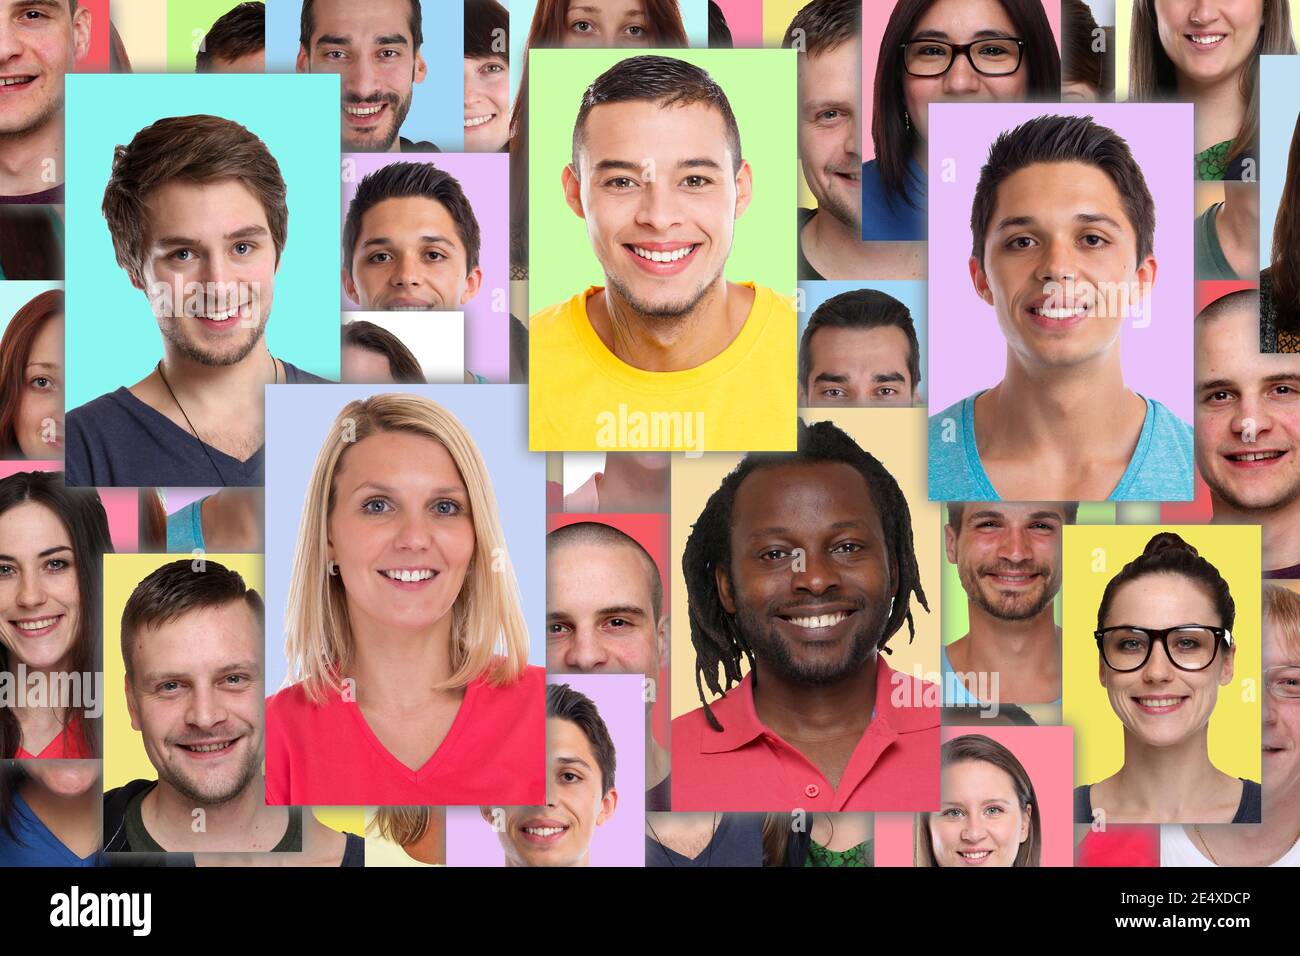 Portrait Sammlung Gruppe von Menschen Porträts Gesichter Hintergrund jung lächelnd Social Media-Netzwerk Stockfoto